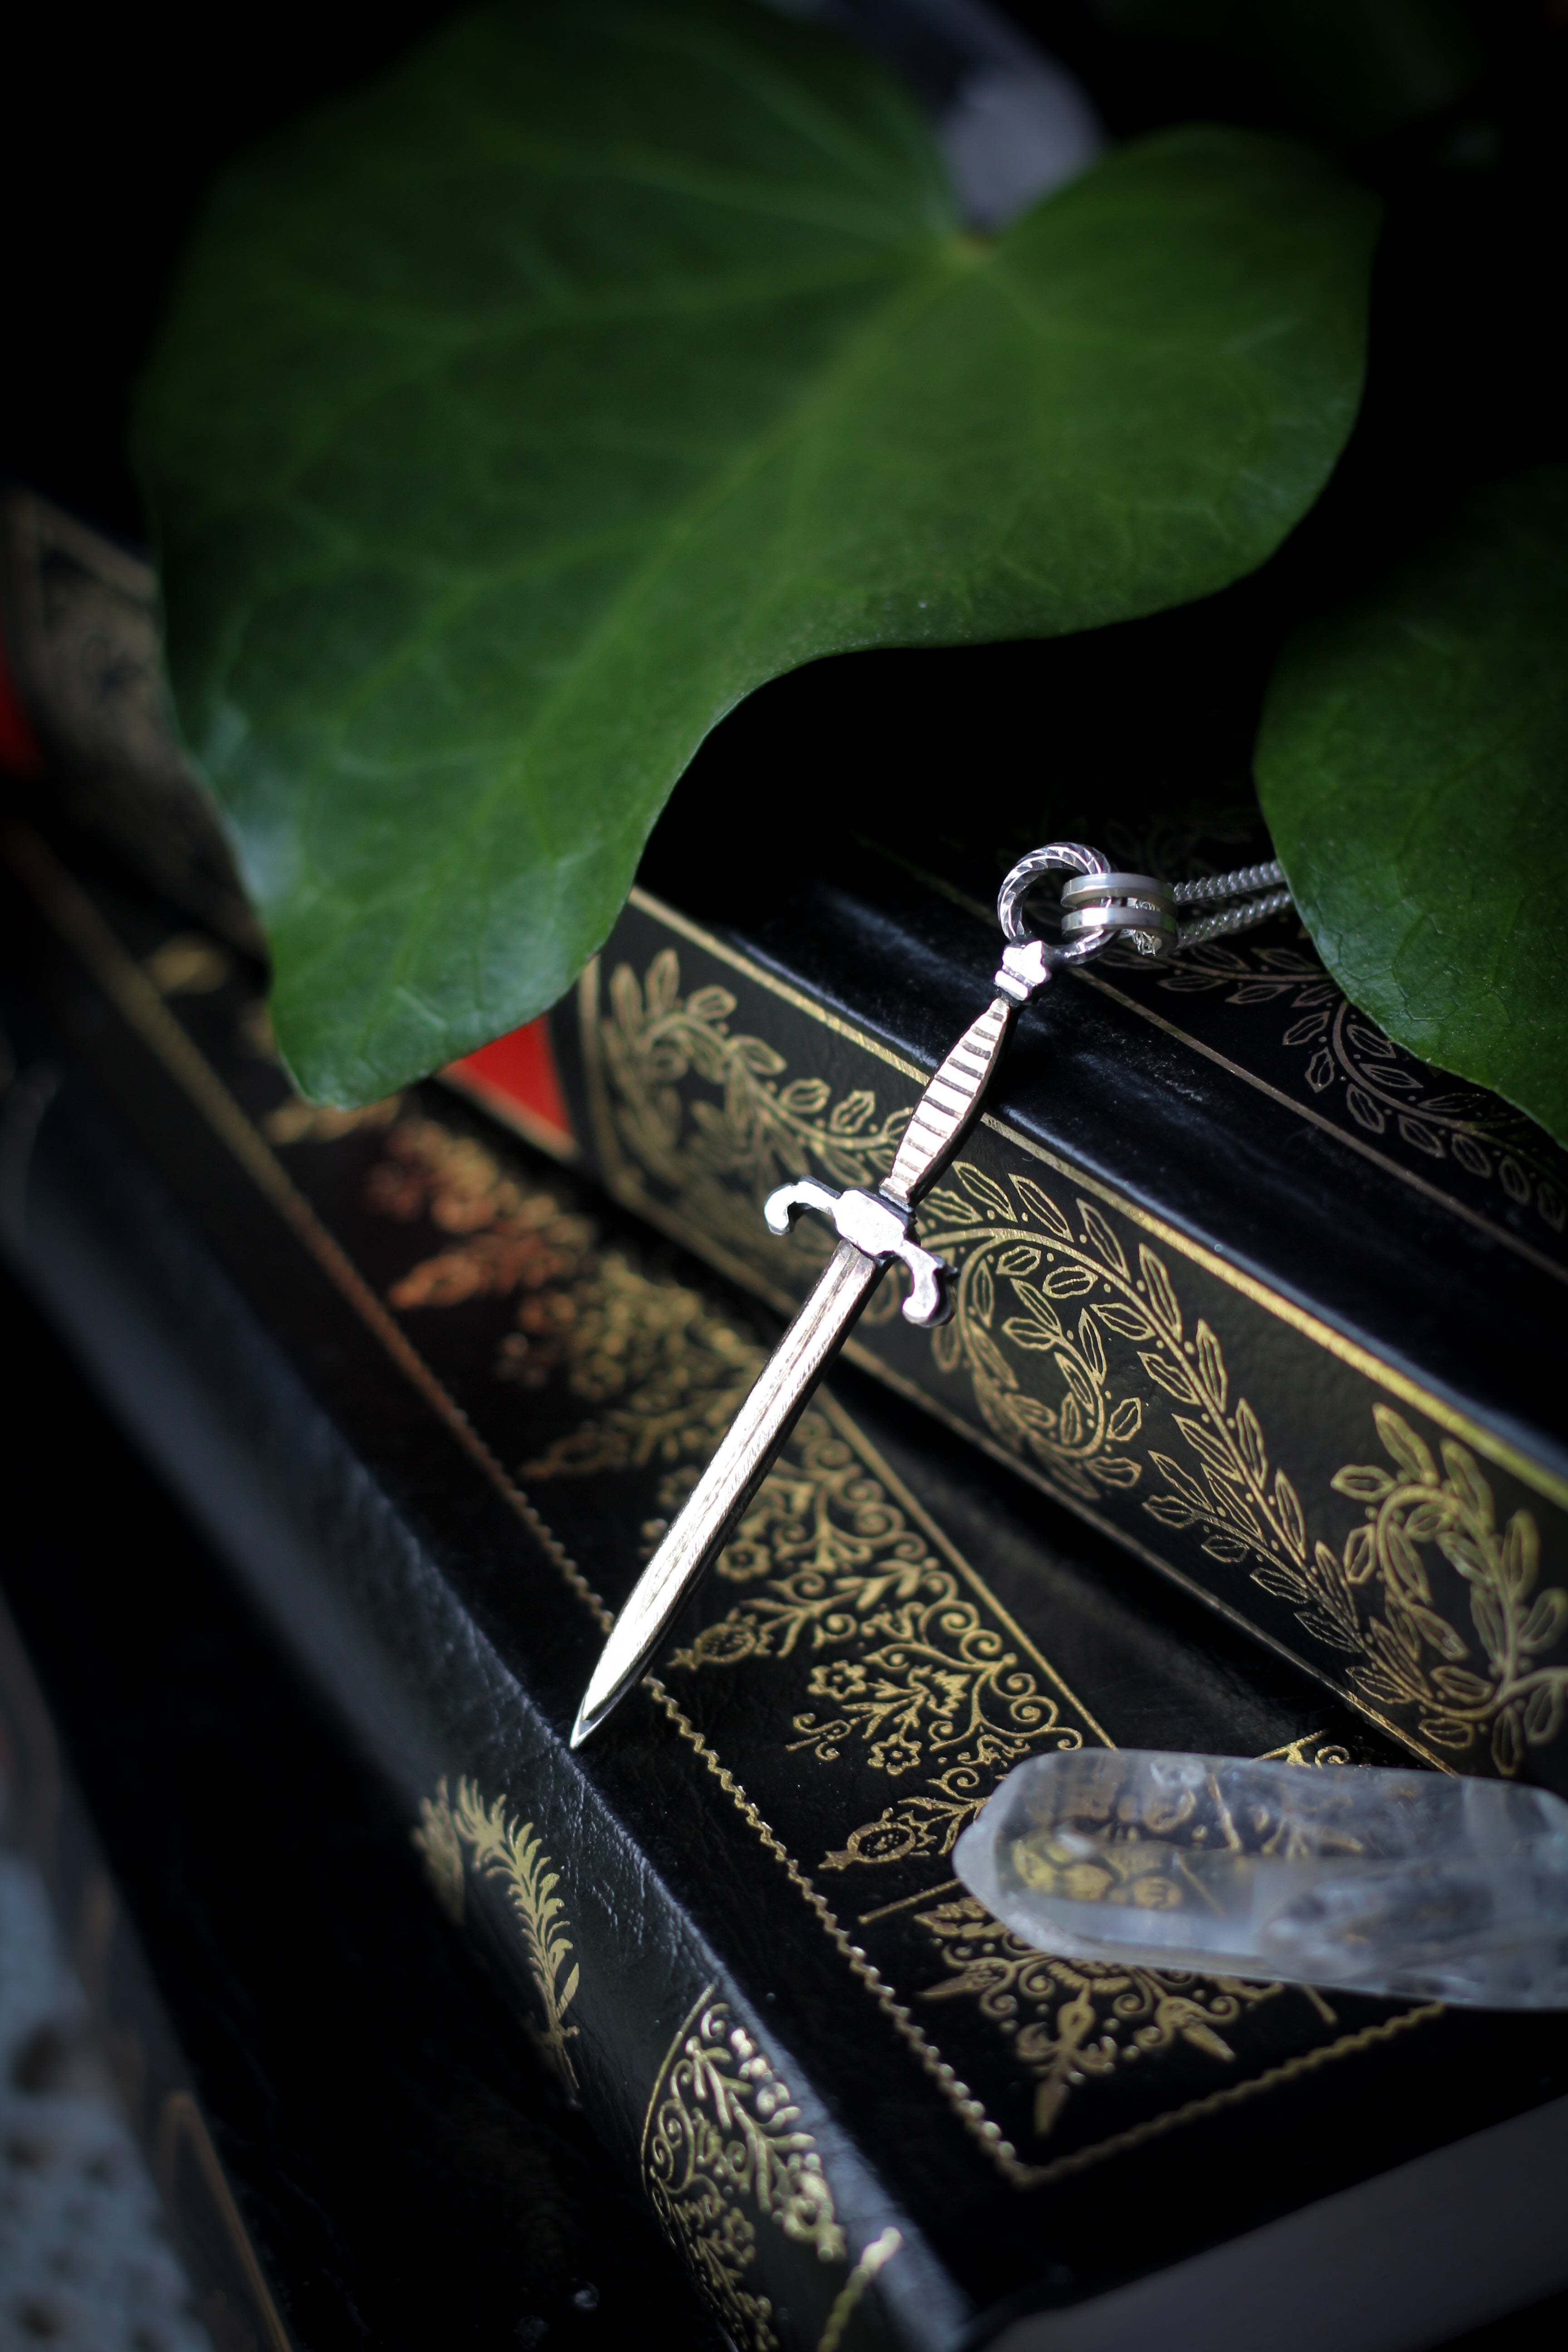 Claíomh Solais - Collier en argent et laiton, épée forgée à la main